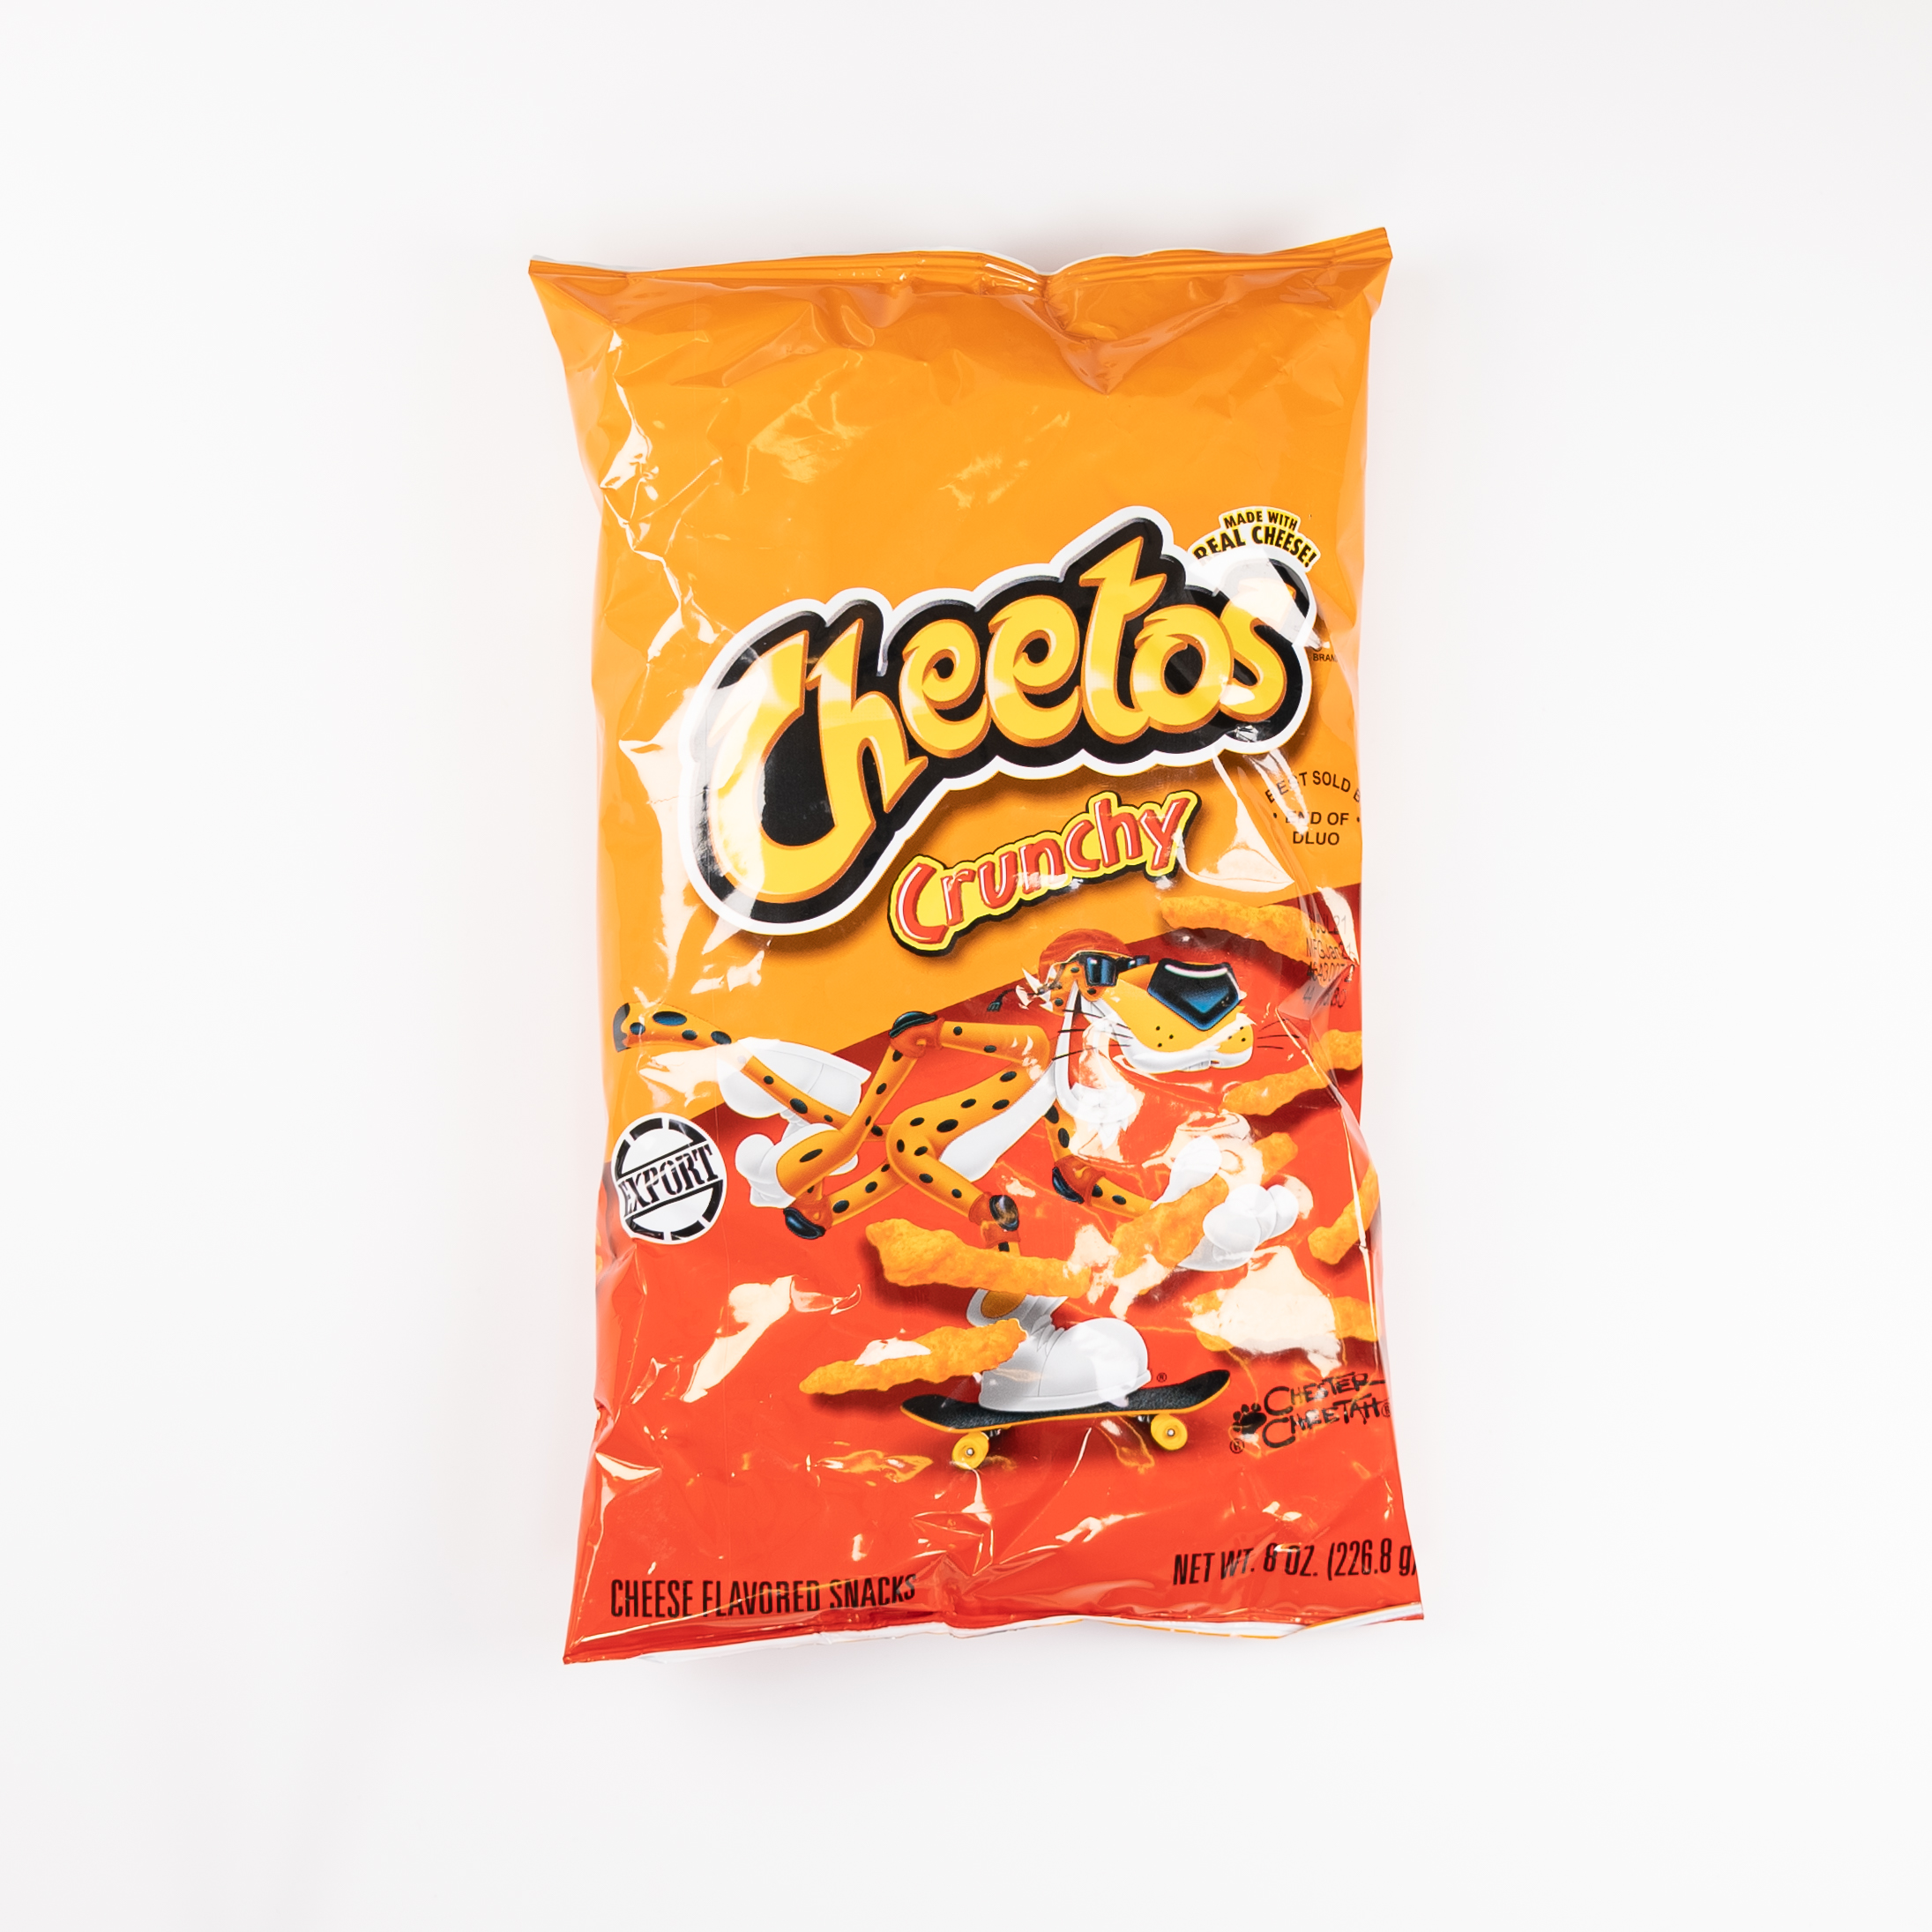 Se Cheetos Crunchy hos Honning-krukken.dk